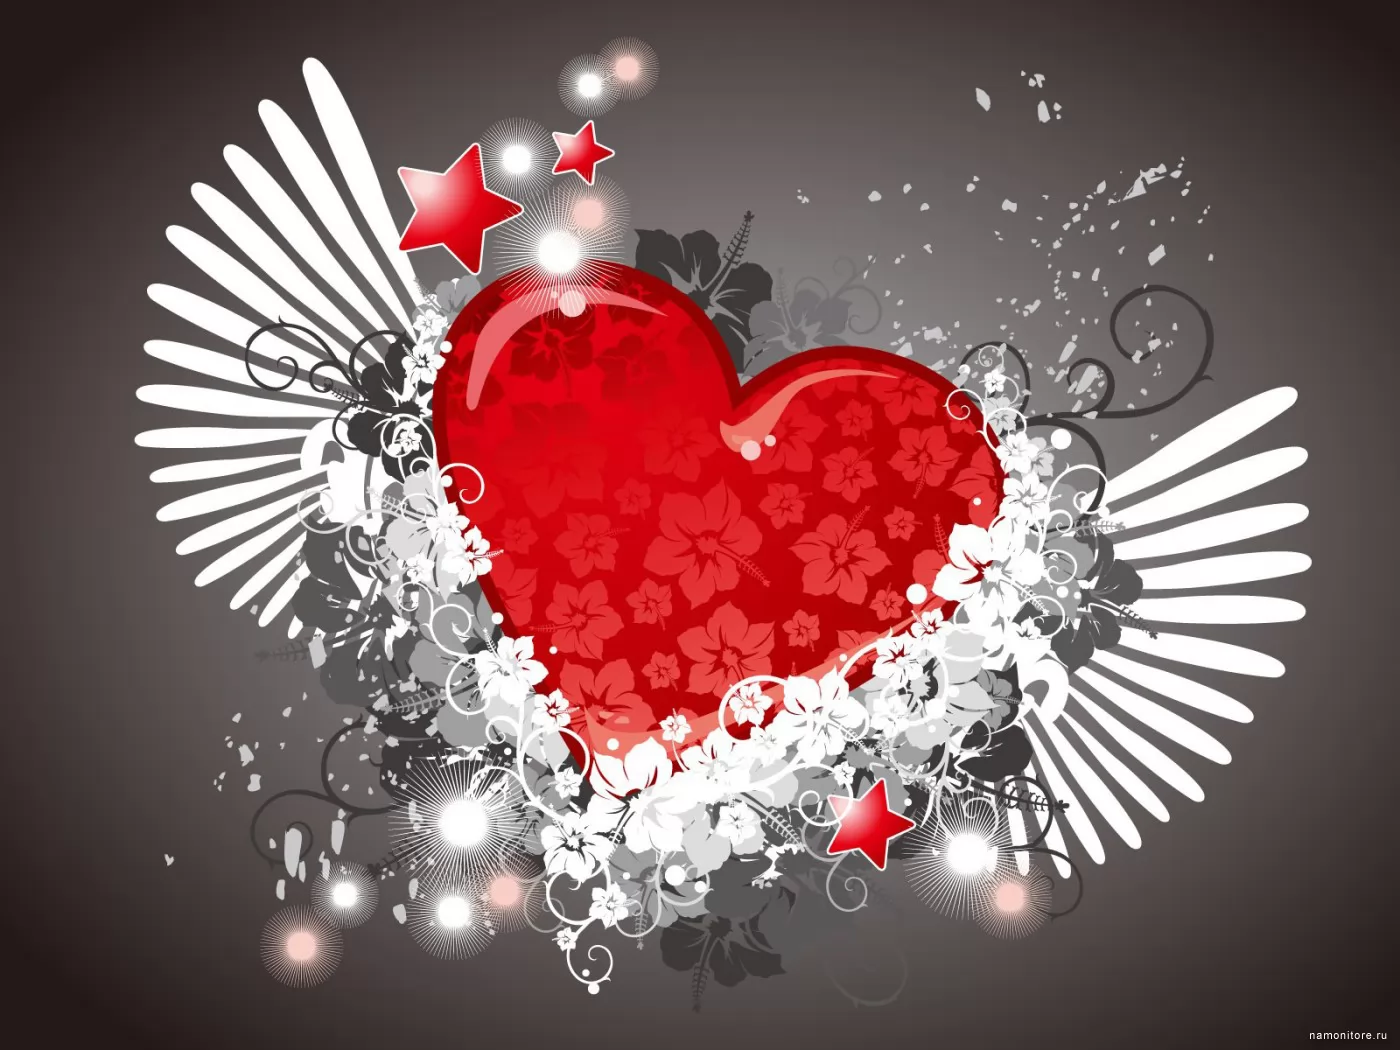 Крылатое, день святого Валентина, любовь, праздники, рисованное, сердце, серое х